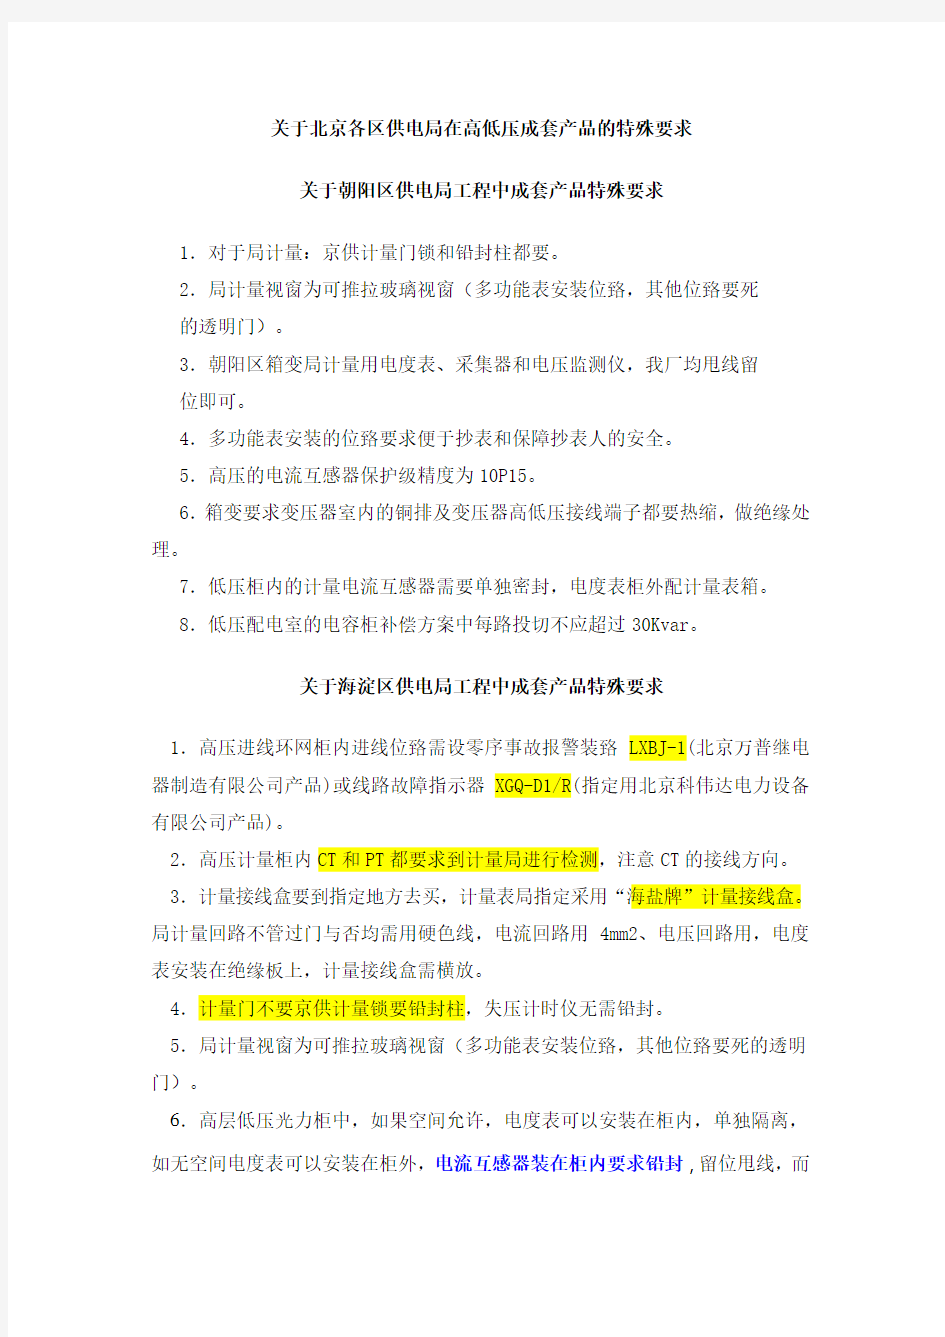 关于北京各区供电局在高低压成套产品的特殊要求